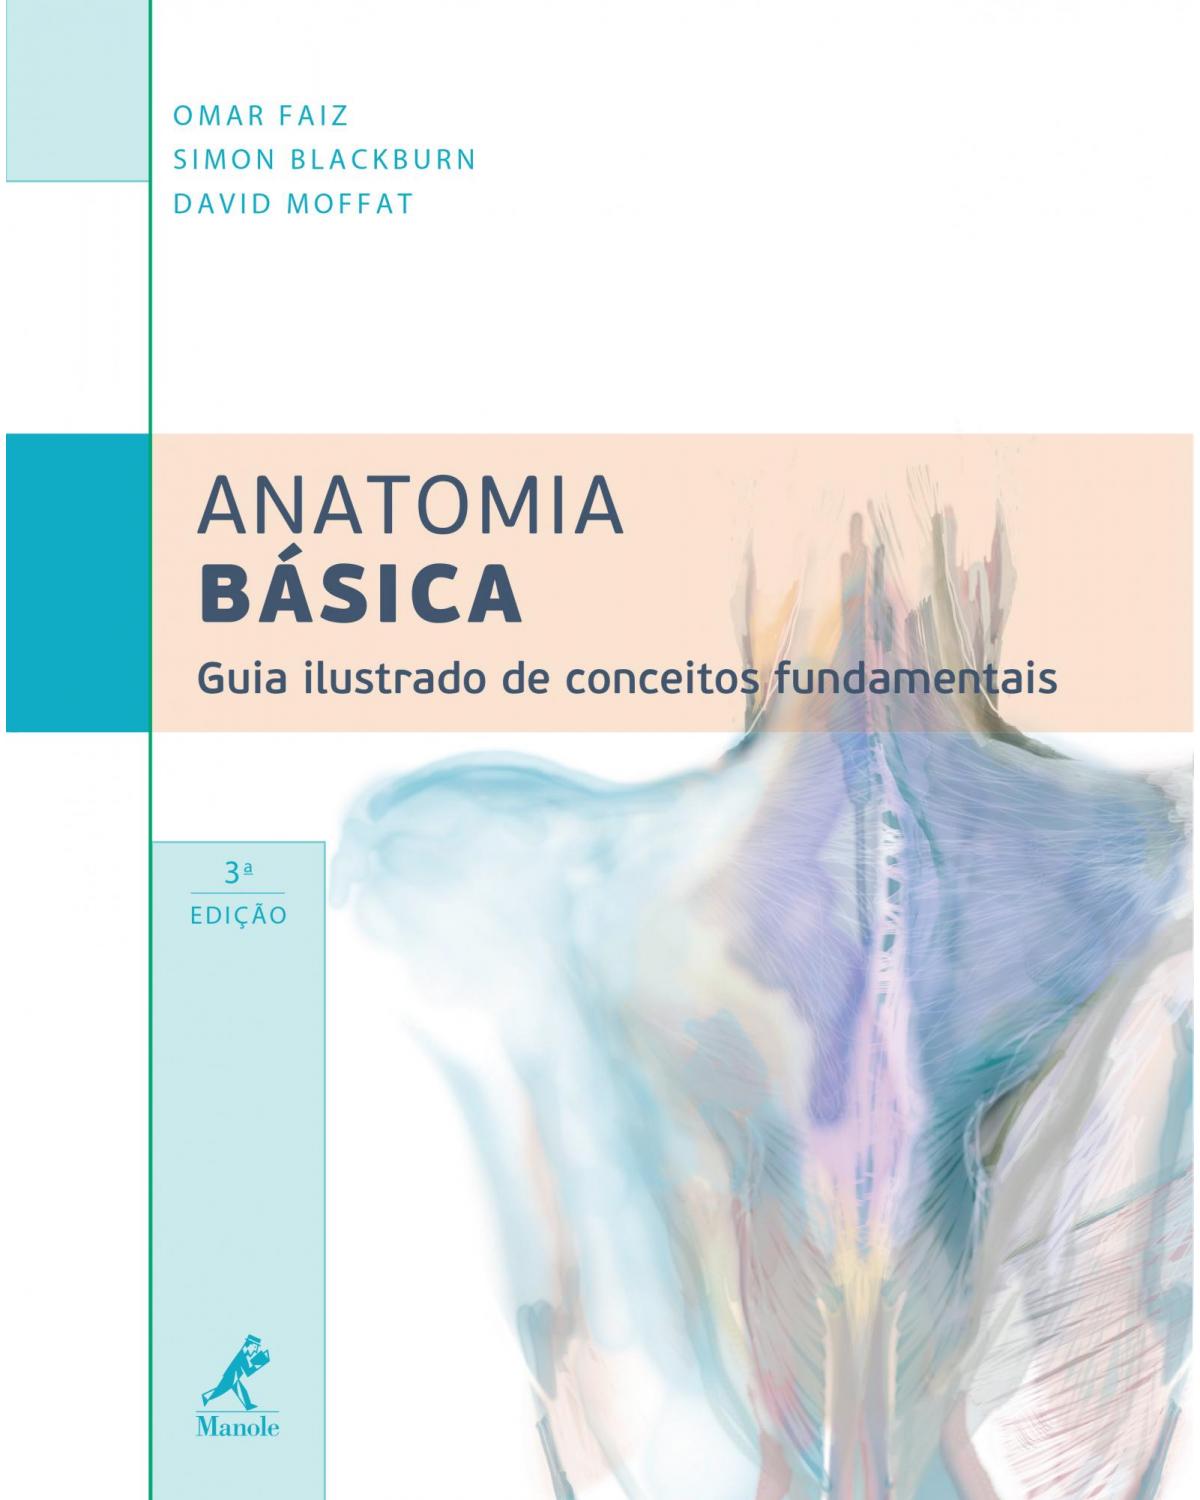 Anatomia básica - guia ilustrado de conceitos fundamentais - 3ª Edição | 2013